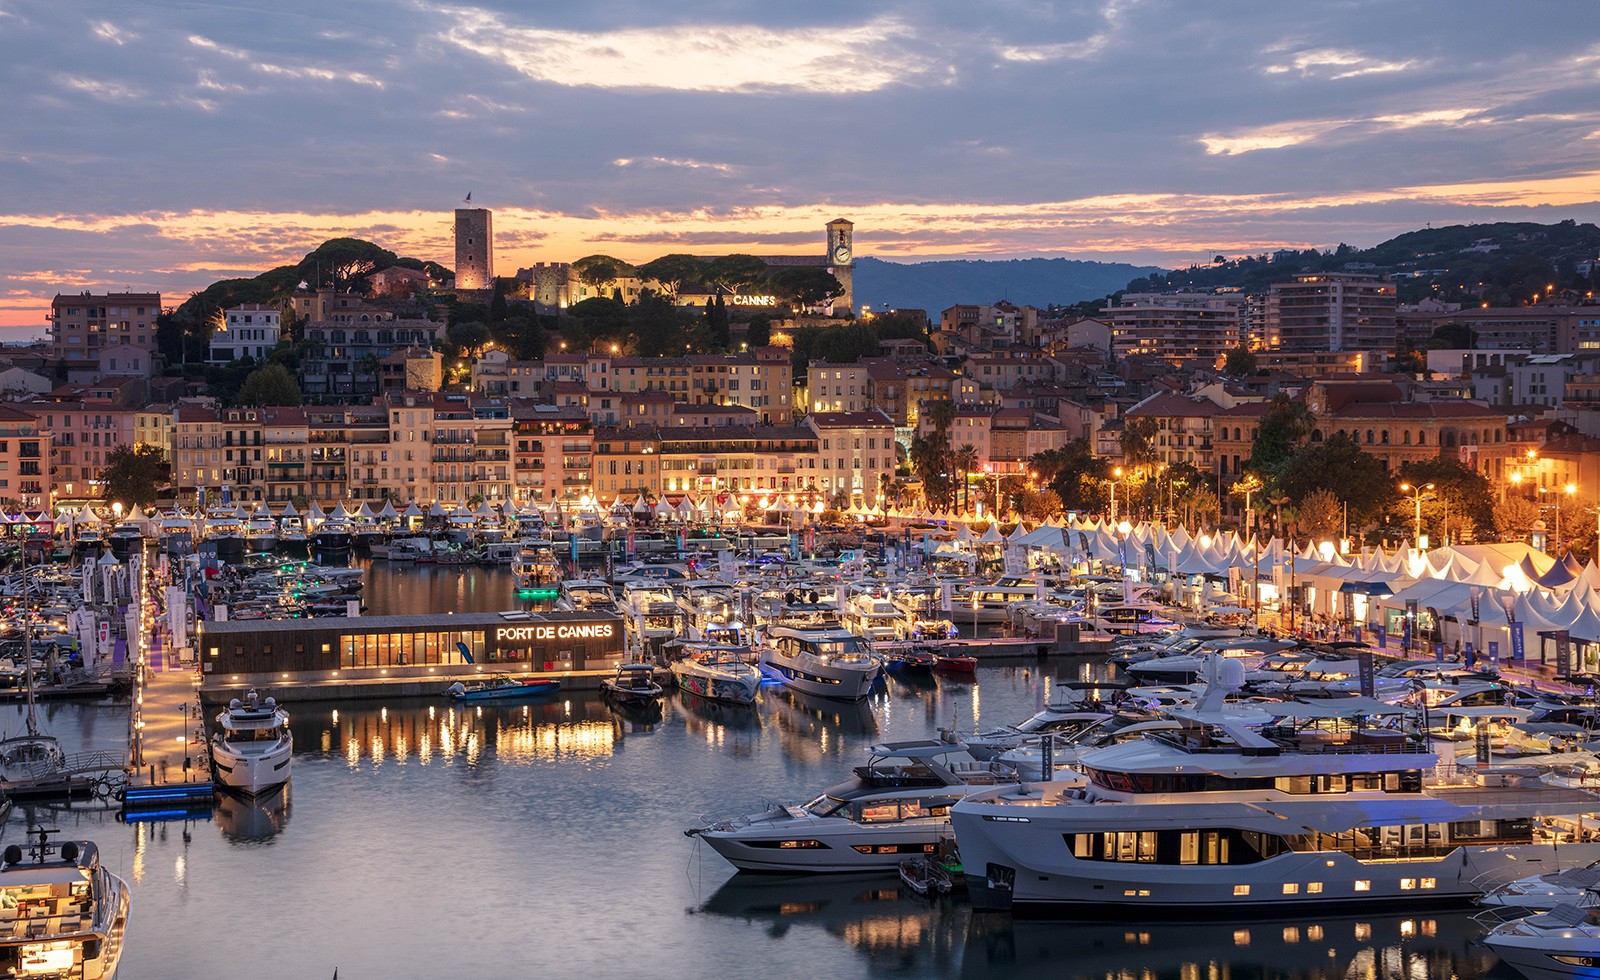 A equipa Soproyachts tem o prazer de anunciar sua presença no Cannes Yachting Festival 2023